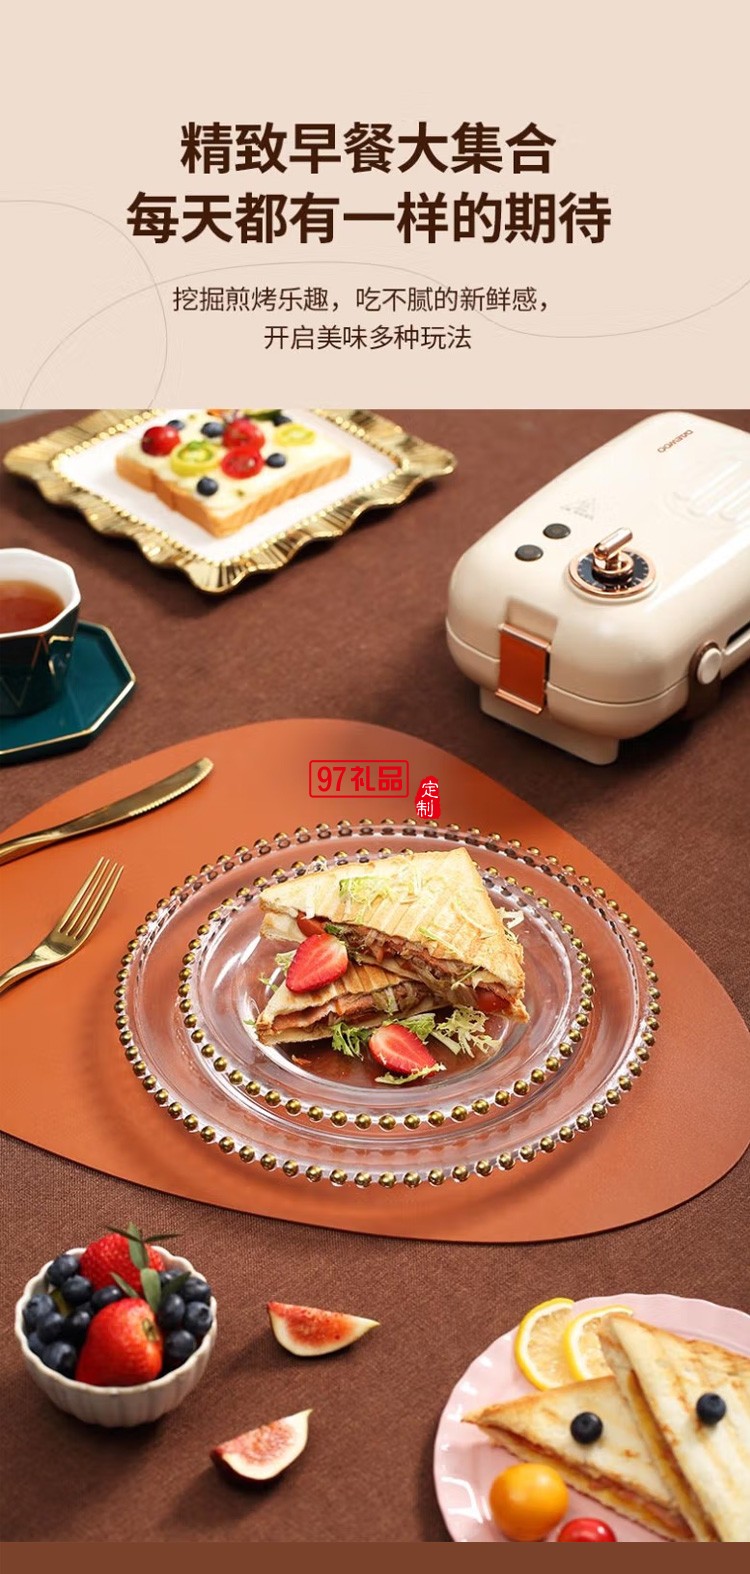 三明治机家用多功能早餐三明治机烤面包机定制公司广告礼品